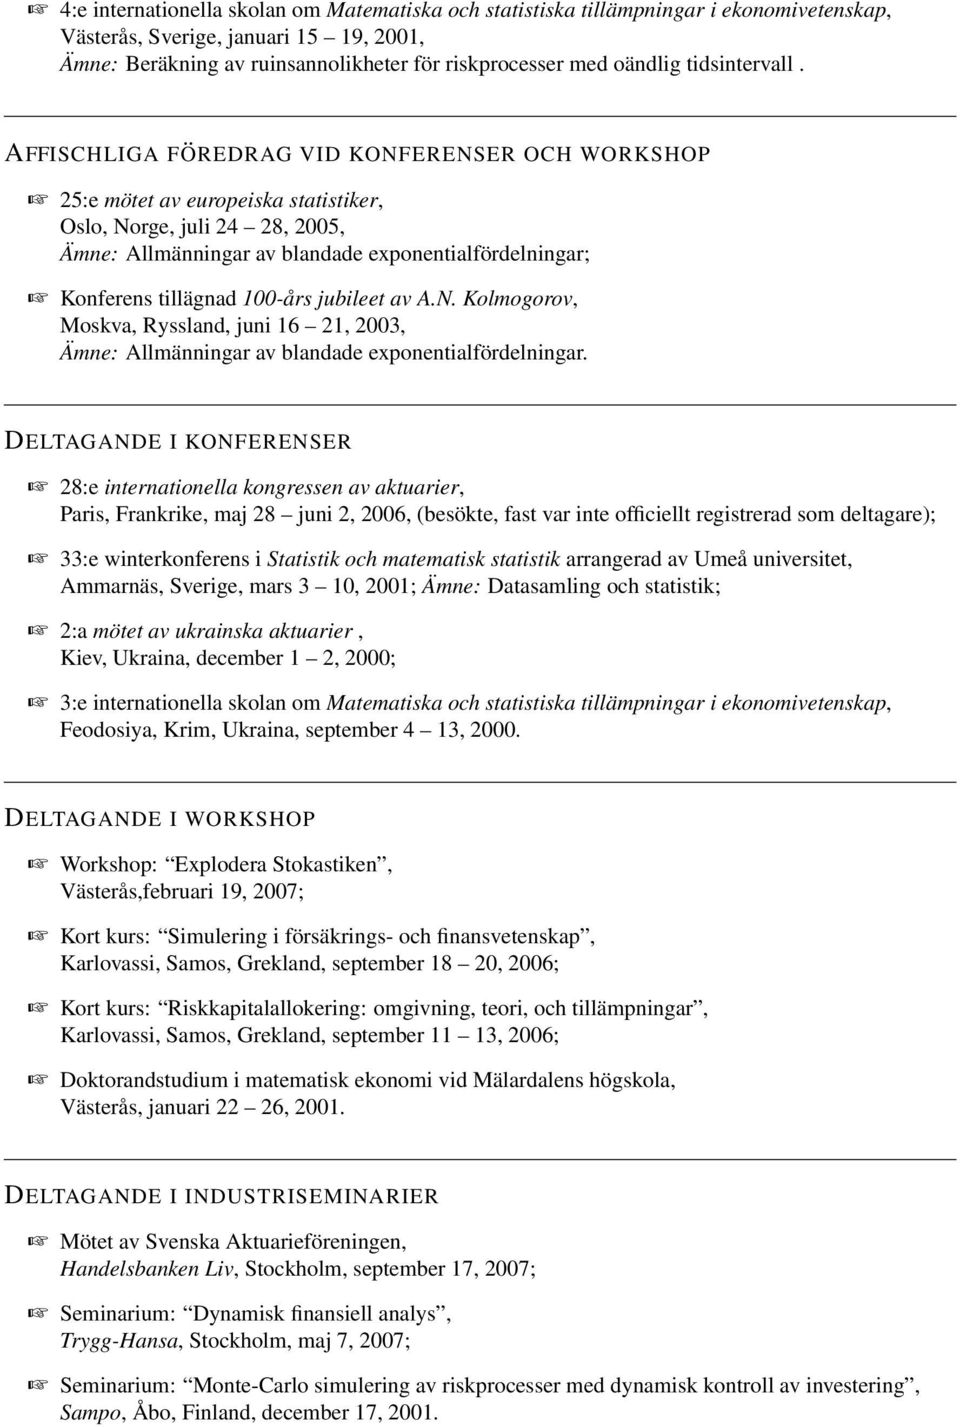 AFFISCHLIGA FÖREDRAG VID KONFERENSER OCH WORKSHOP 25:e mötet av europeiska statistiker, Oslo, Norge, juli 24 28, 2005, Ämne: Allmänningar av blandade exponentialfördelningar; Konferens tillägnad